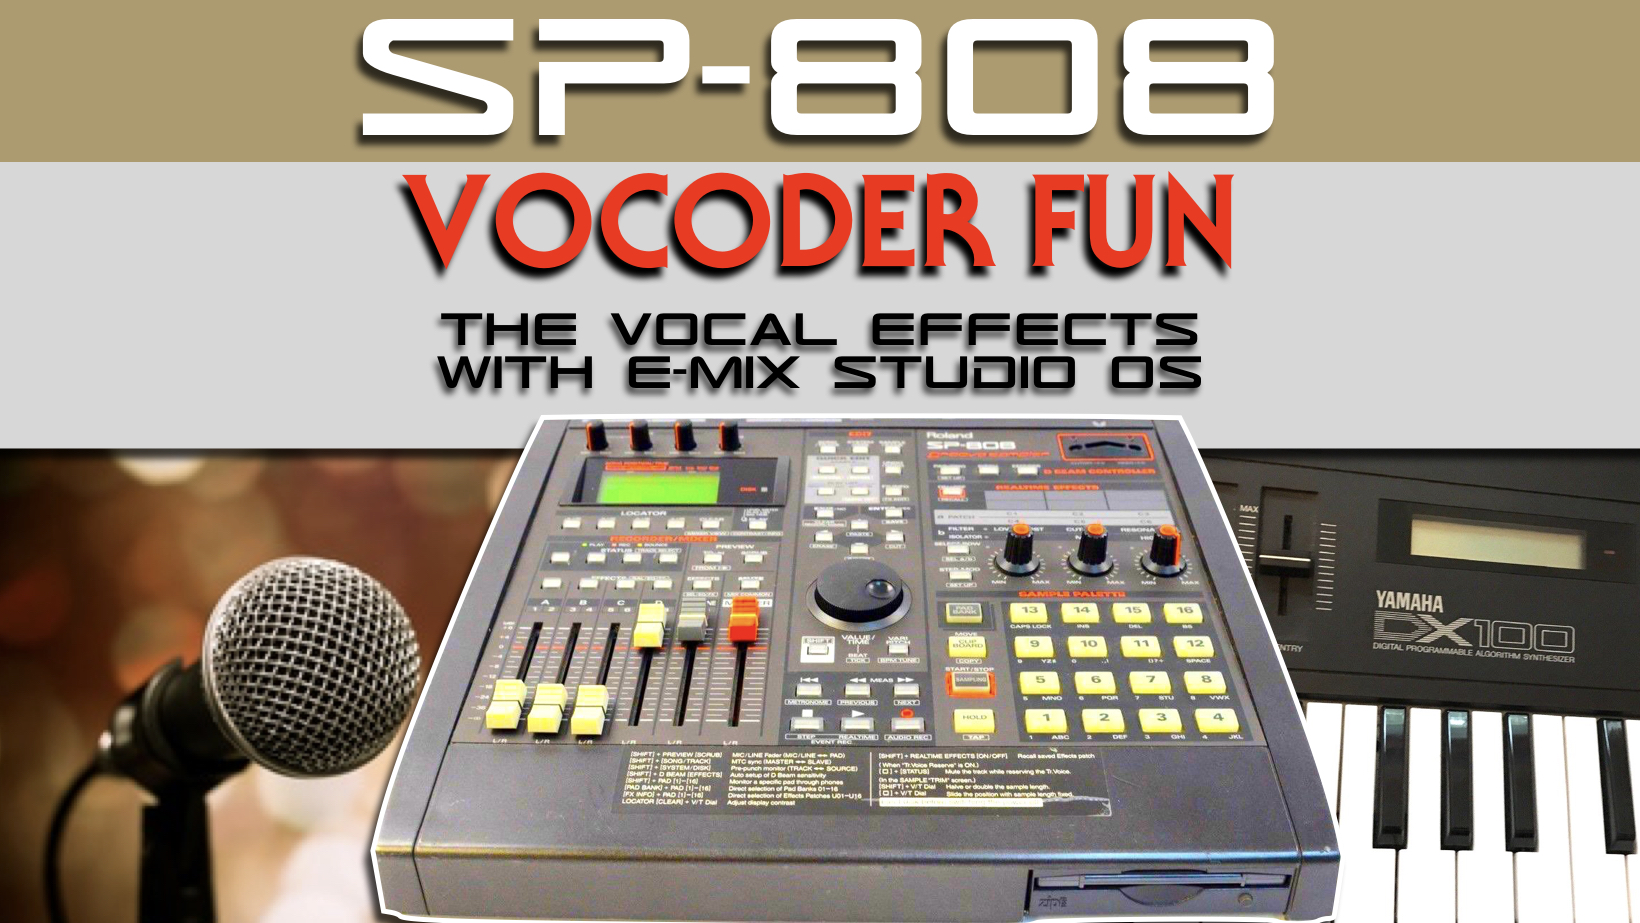 Roland SP-808 Groovesampler with Vocoder effect